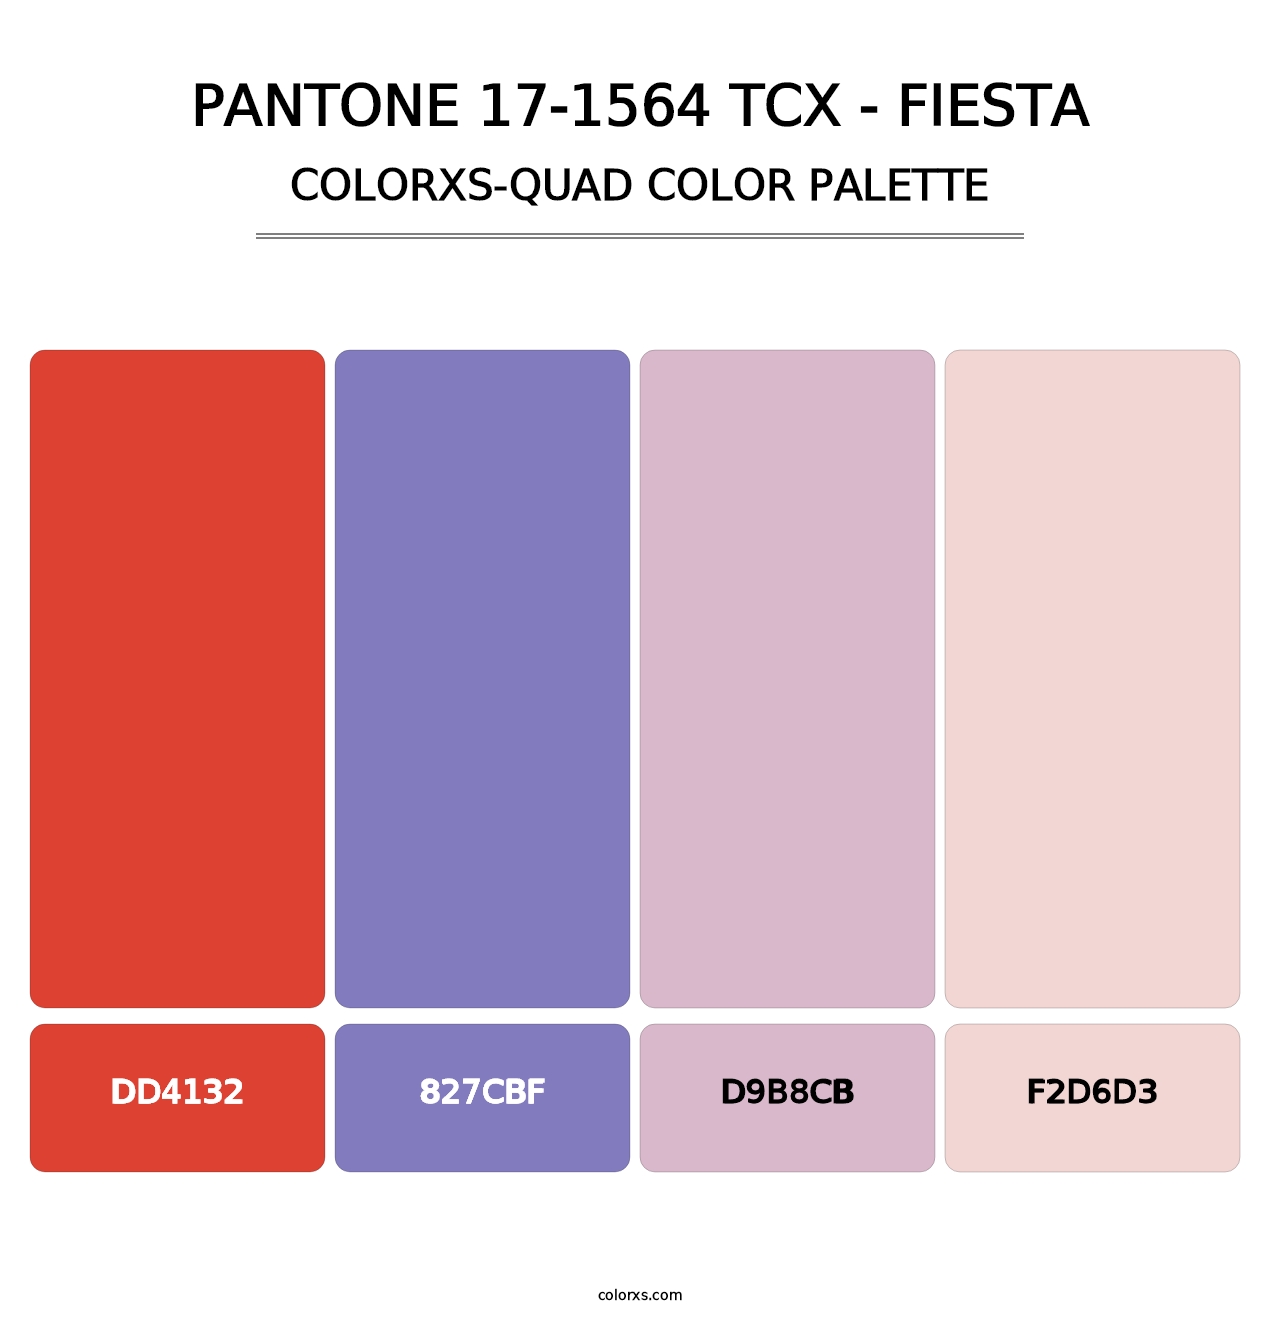 PANTONE 17-1564 TCX - Fiesta - Colorxs Quad Palette